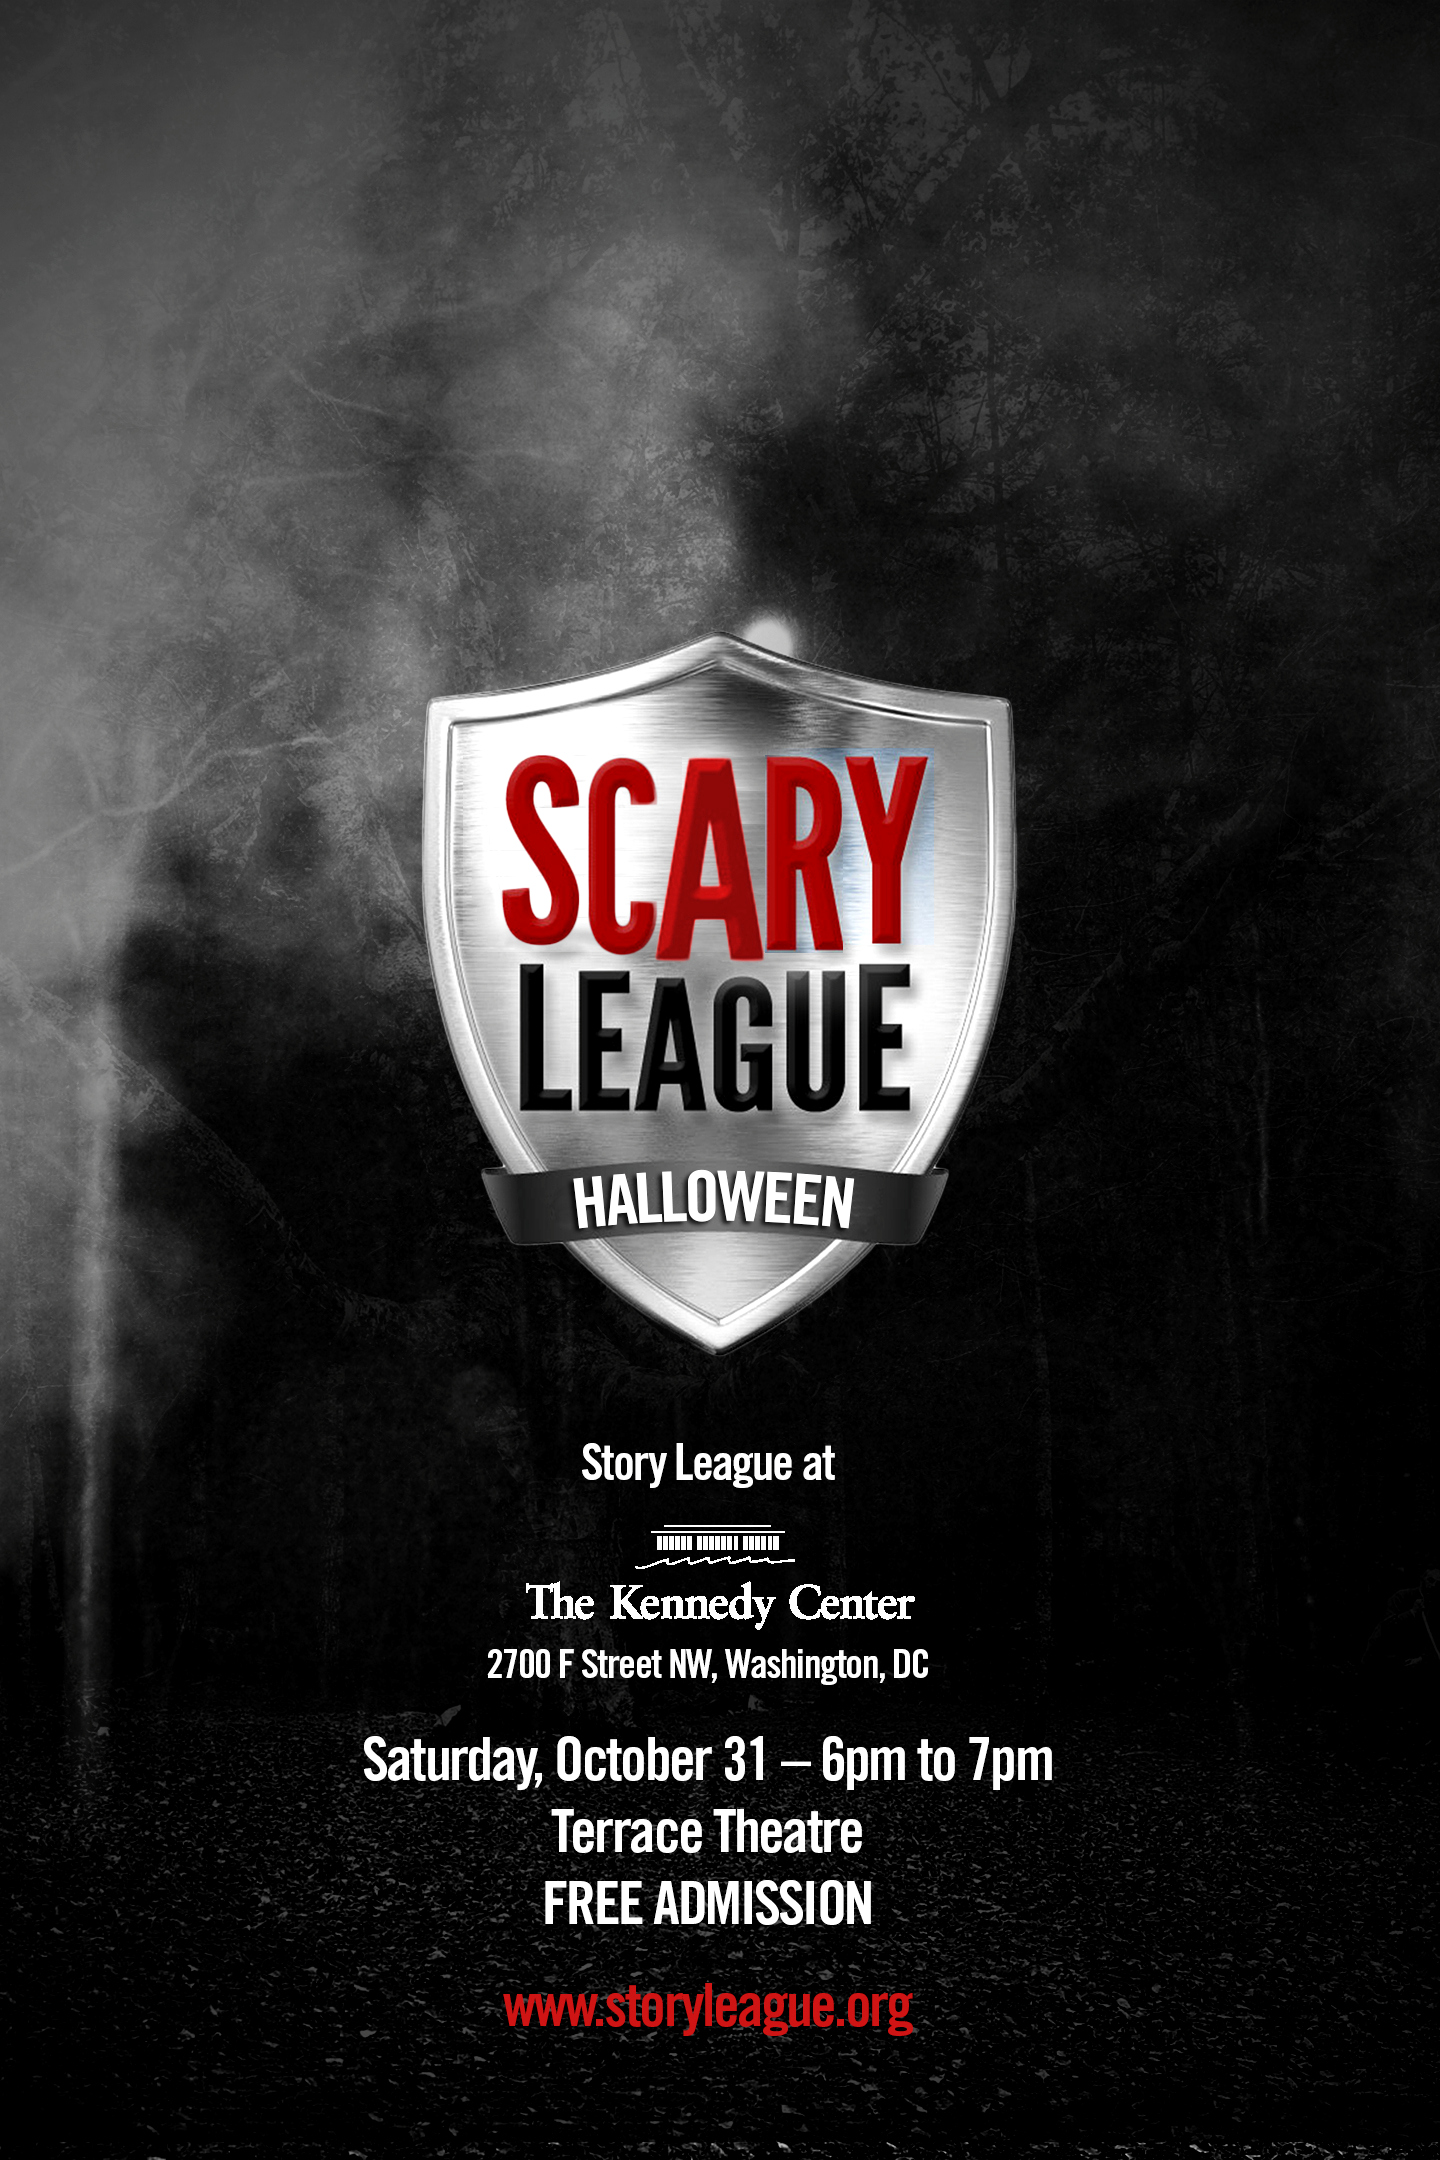 scary league flyer.jpg